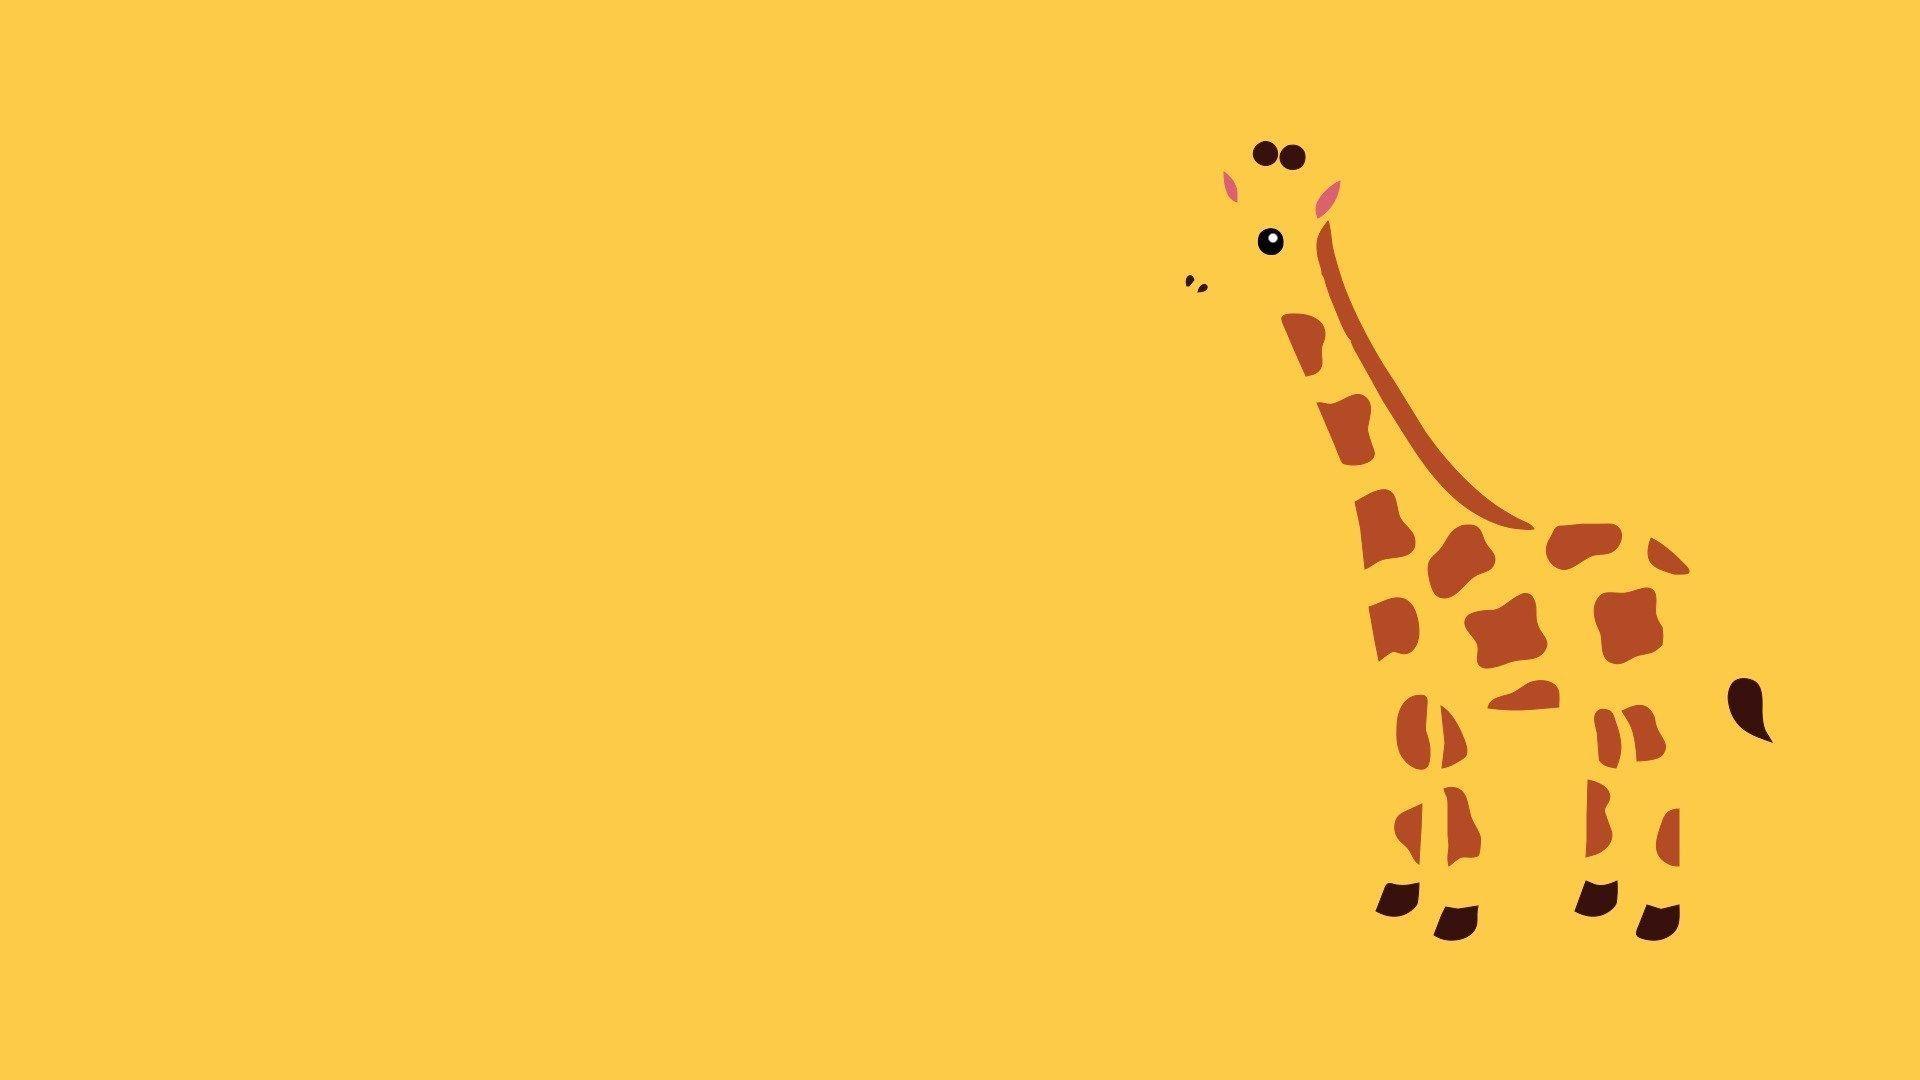 Wallpaper For > Cute Giraffe Wallpaper